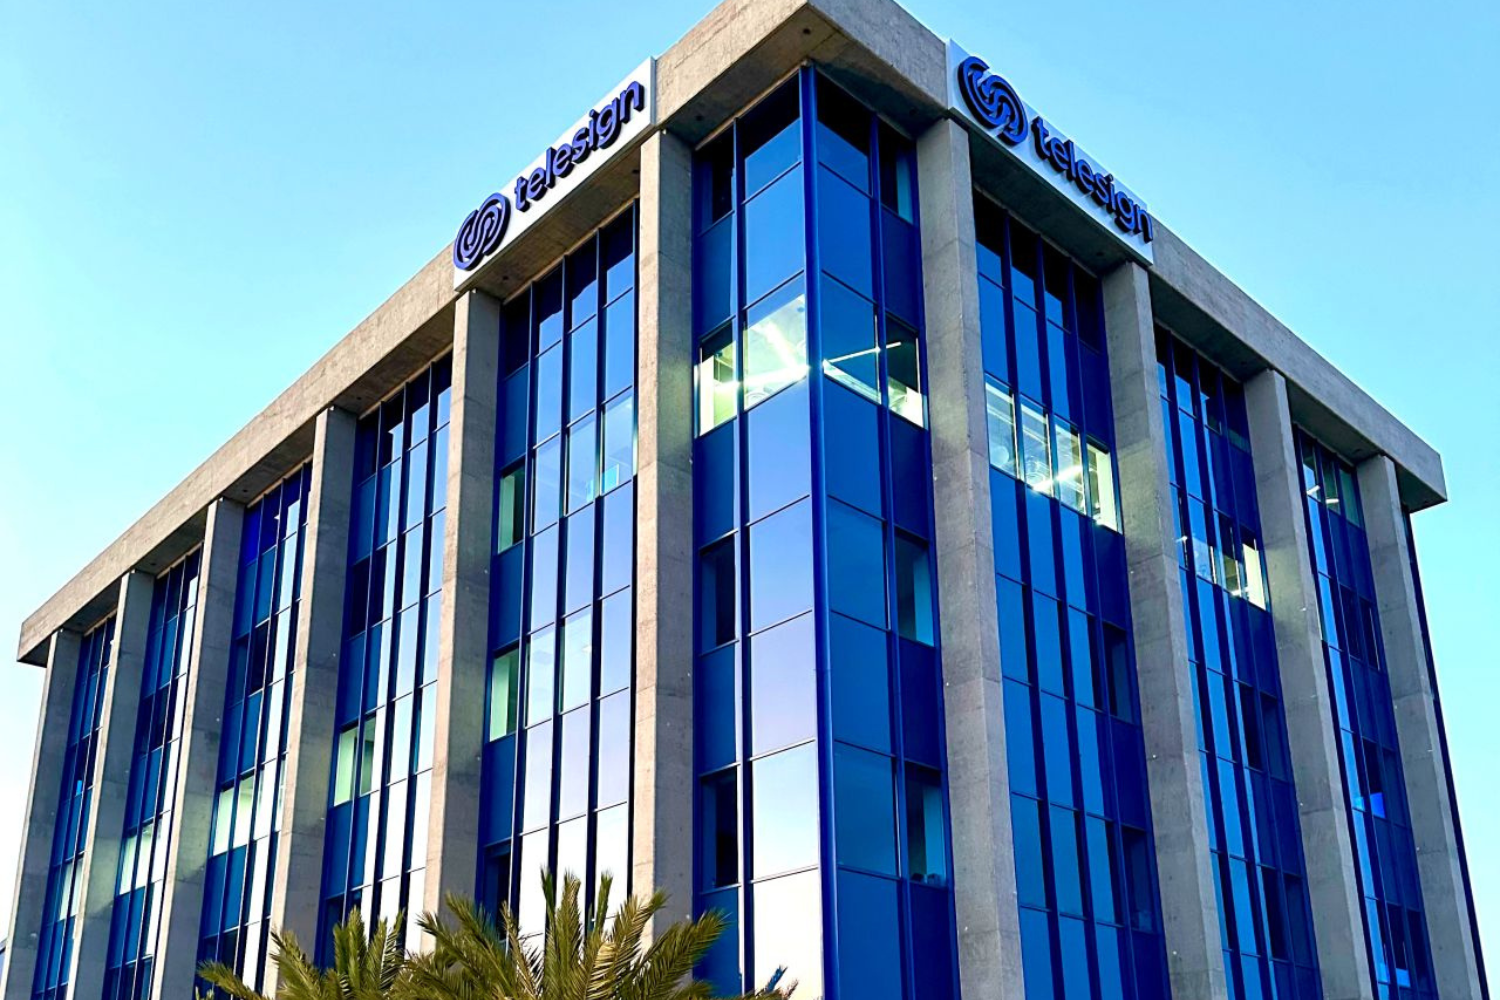 The exterior of the Telesign headquarters building in California.